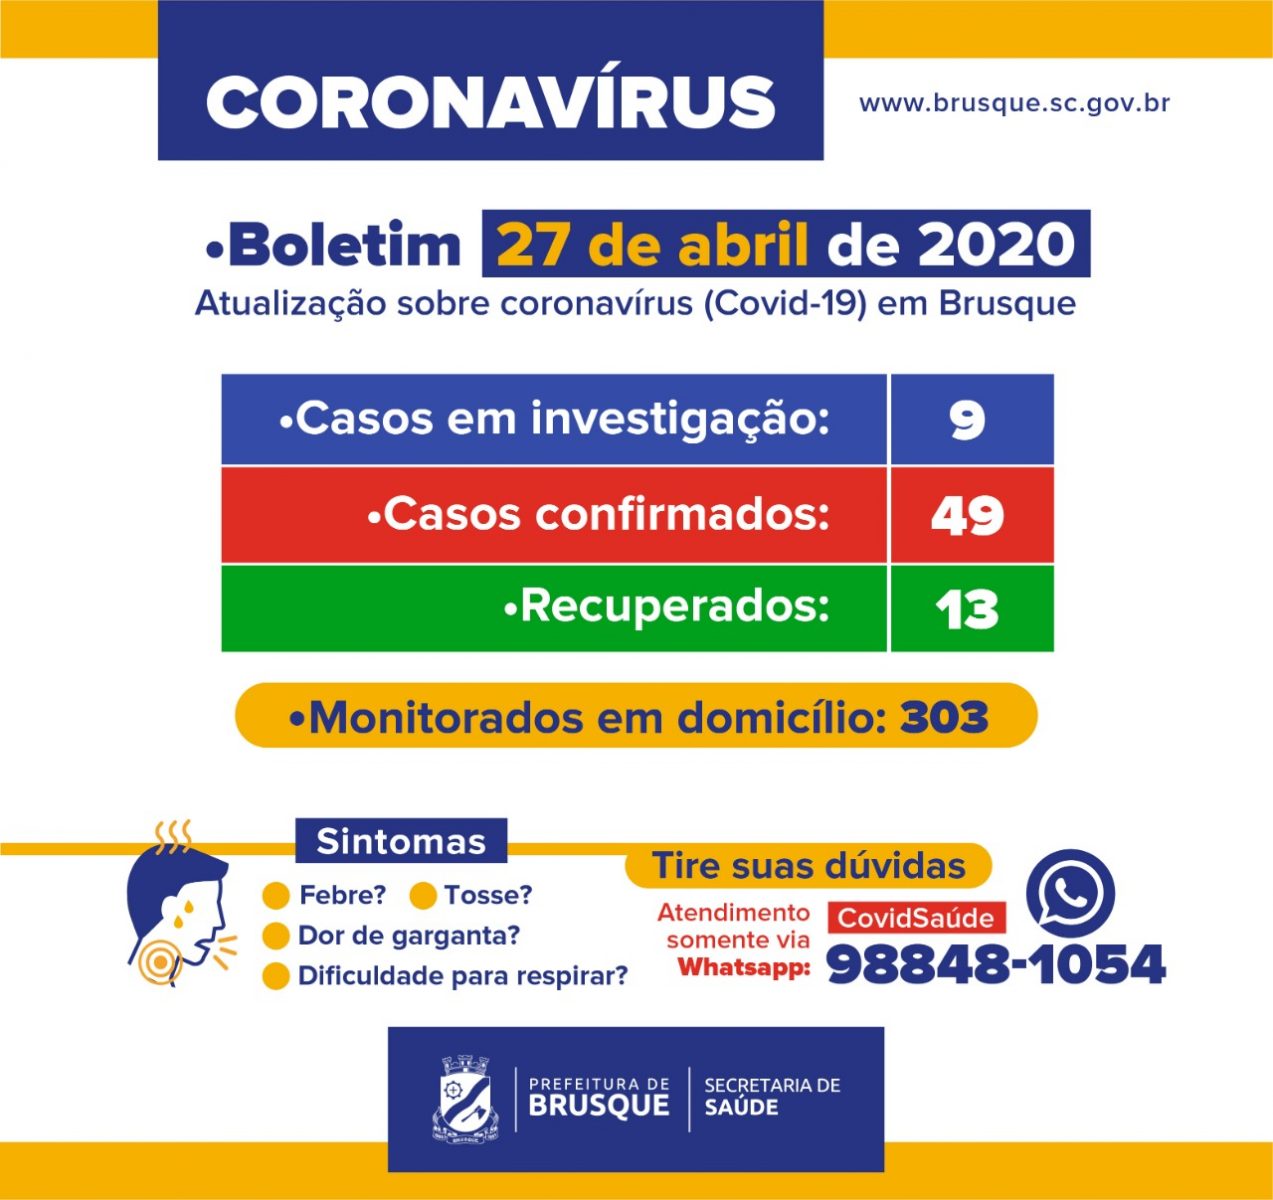 Brusque registra mais um caso de Coronavírus. Números agora chegam a 49